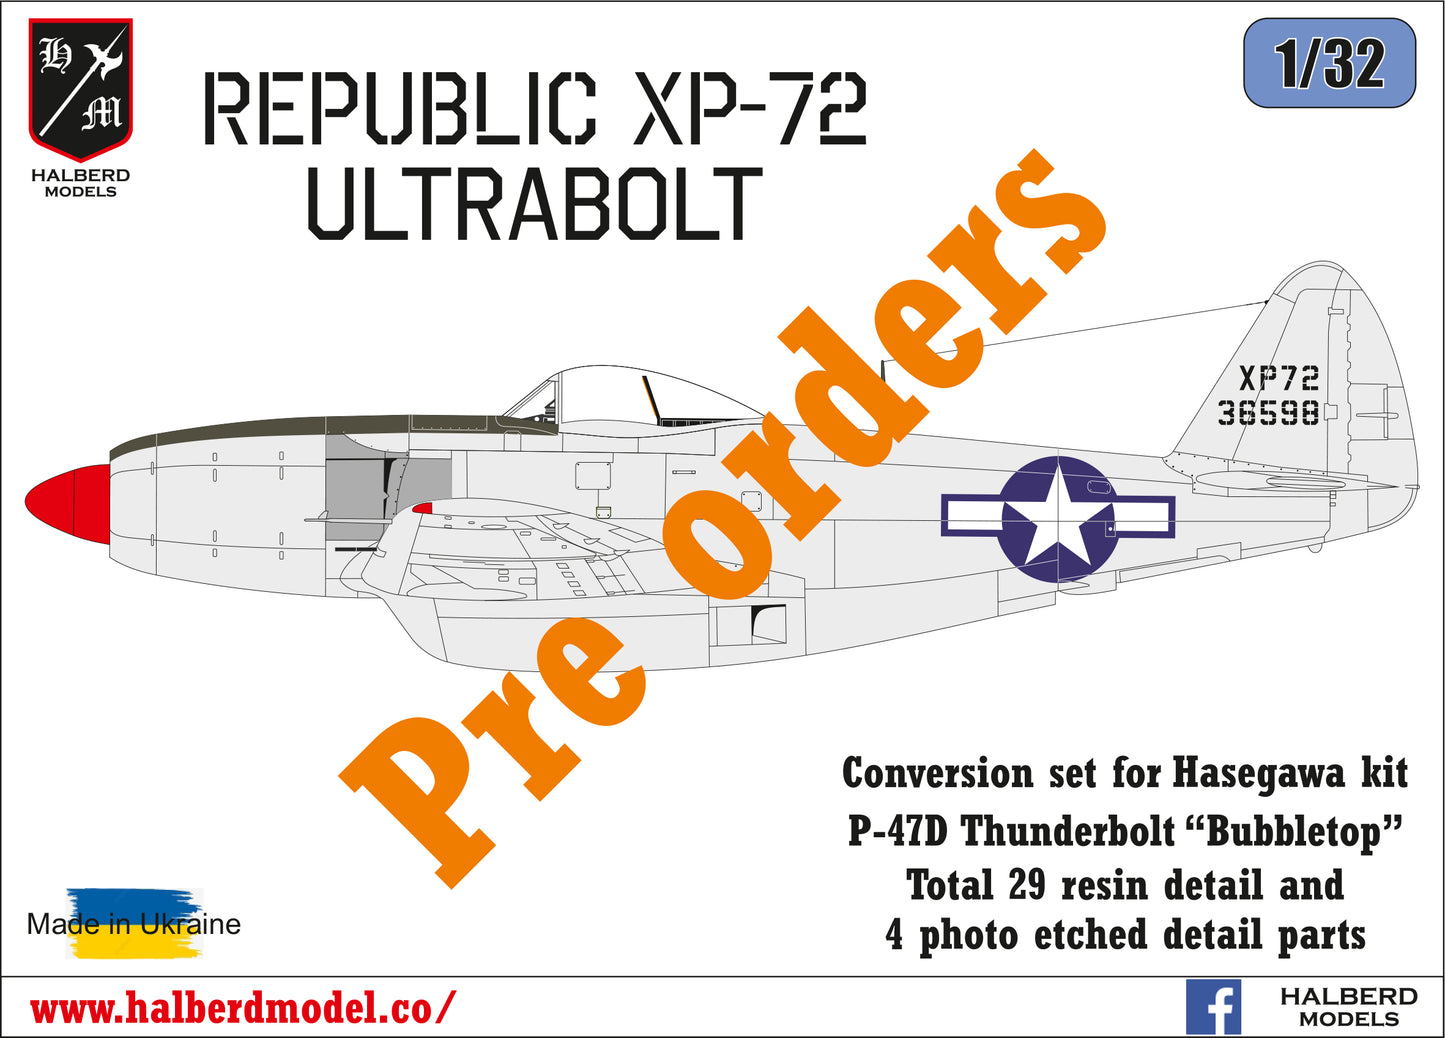 Republic XP-72 Ultrabolt conversion set for Hasegawa kit P-47D Thunderbolt  1/32 scale